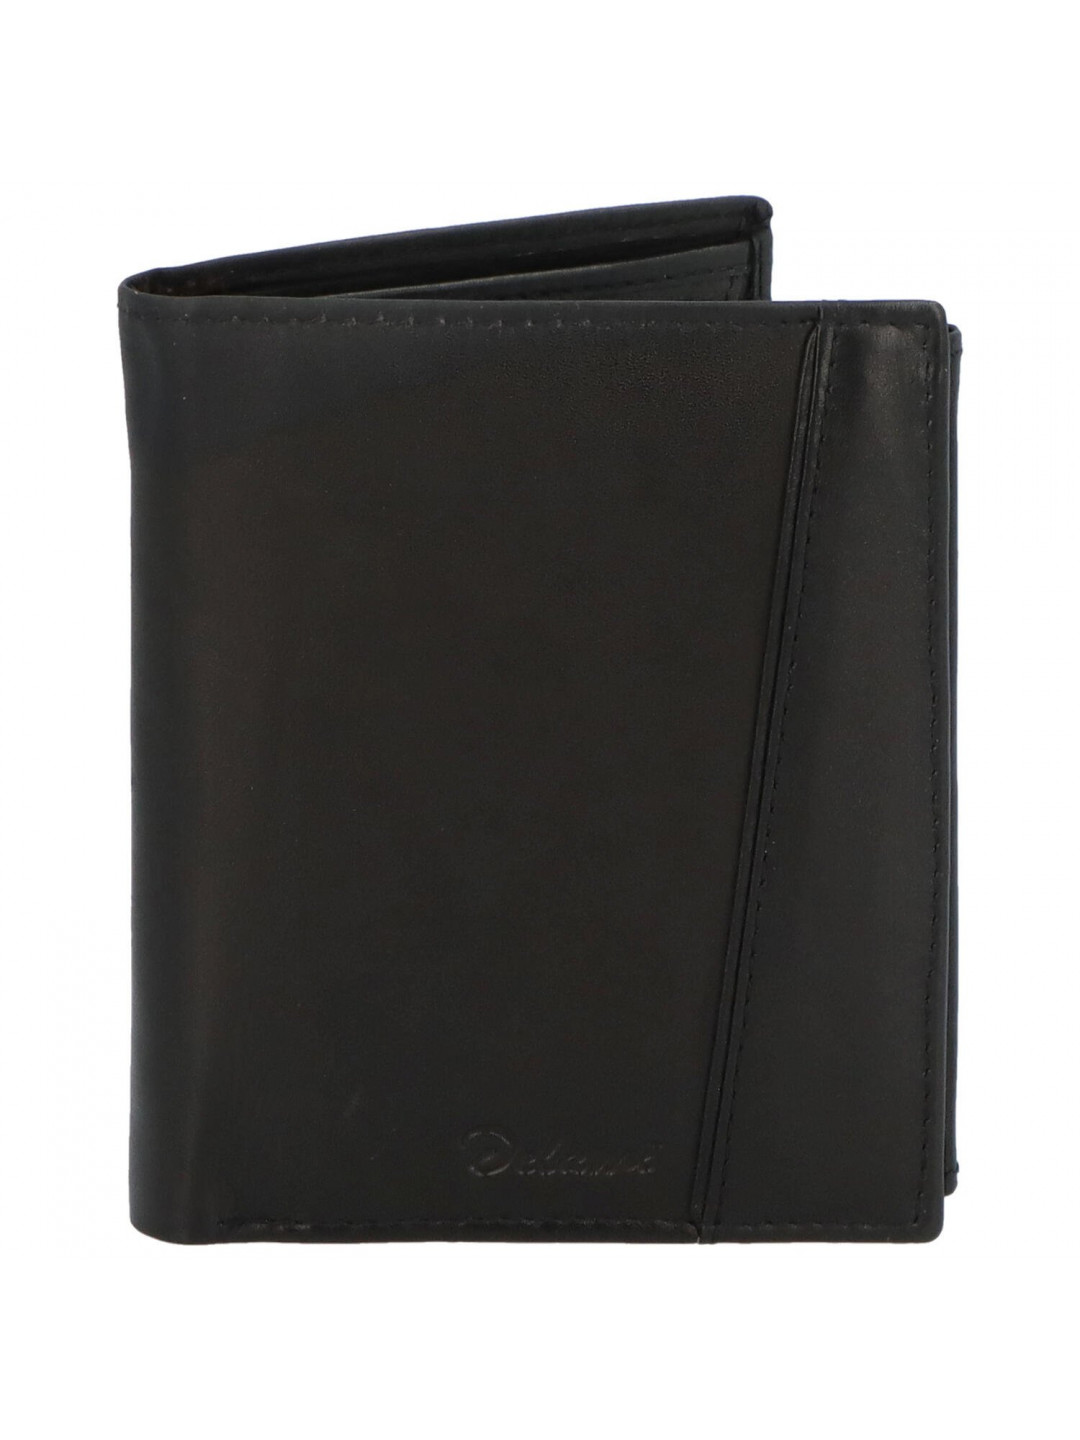 Pánská kožená peněženka s výrazným prošíváním Tommaso černá